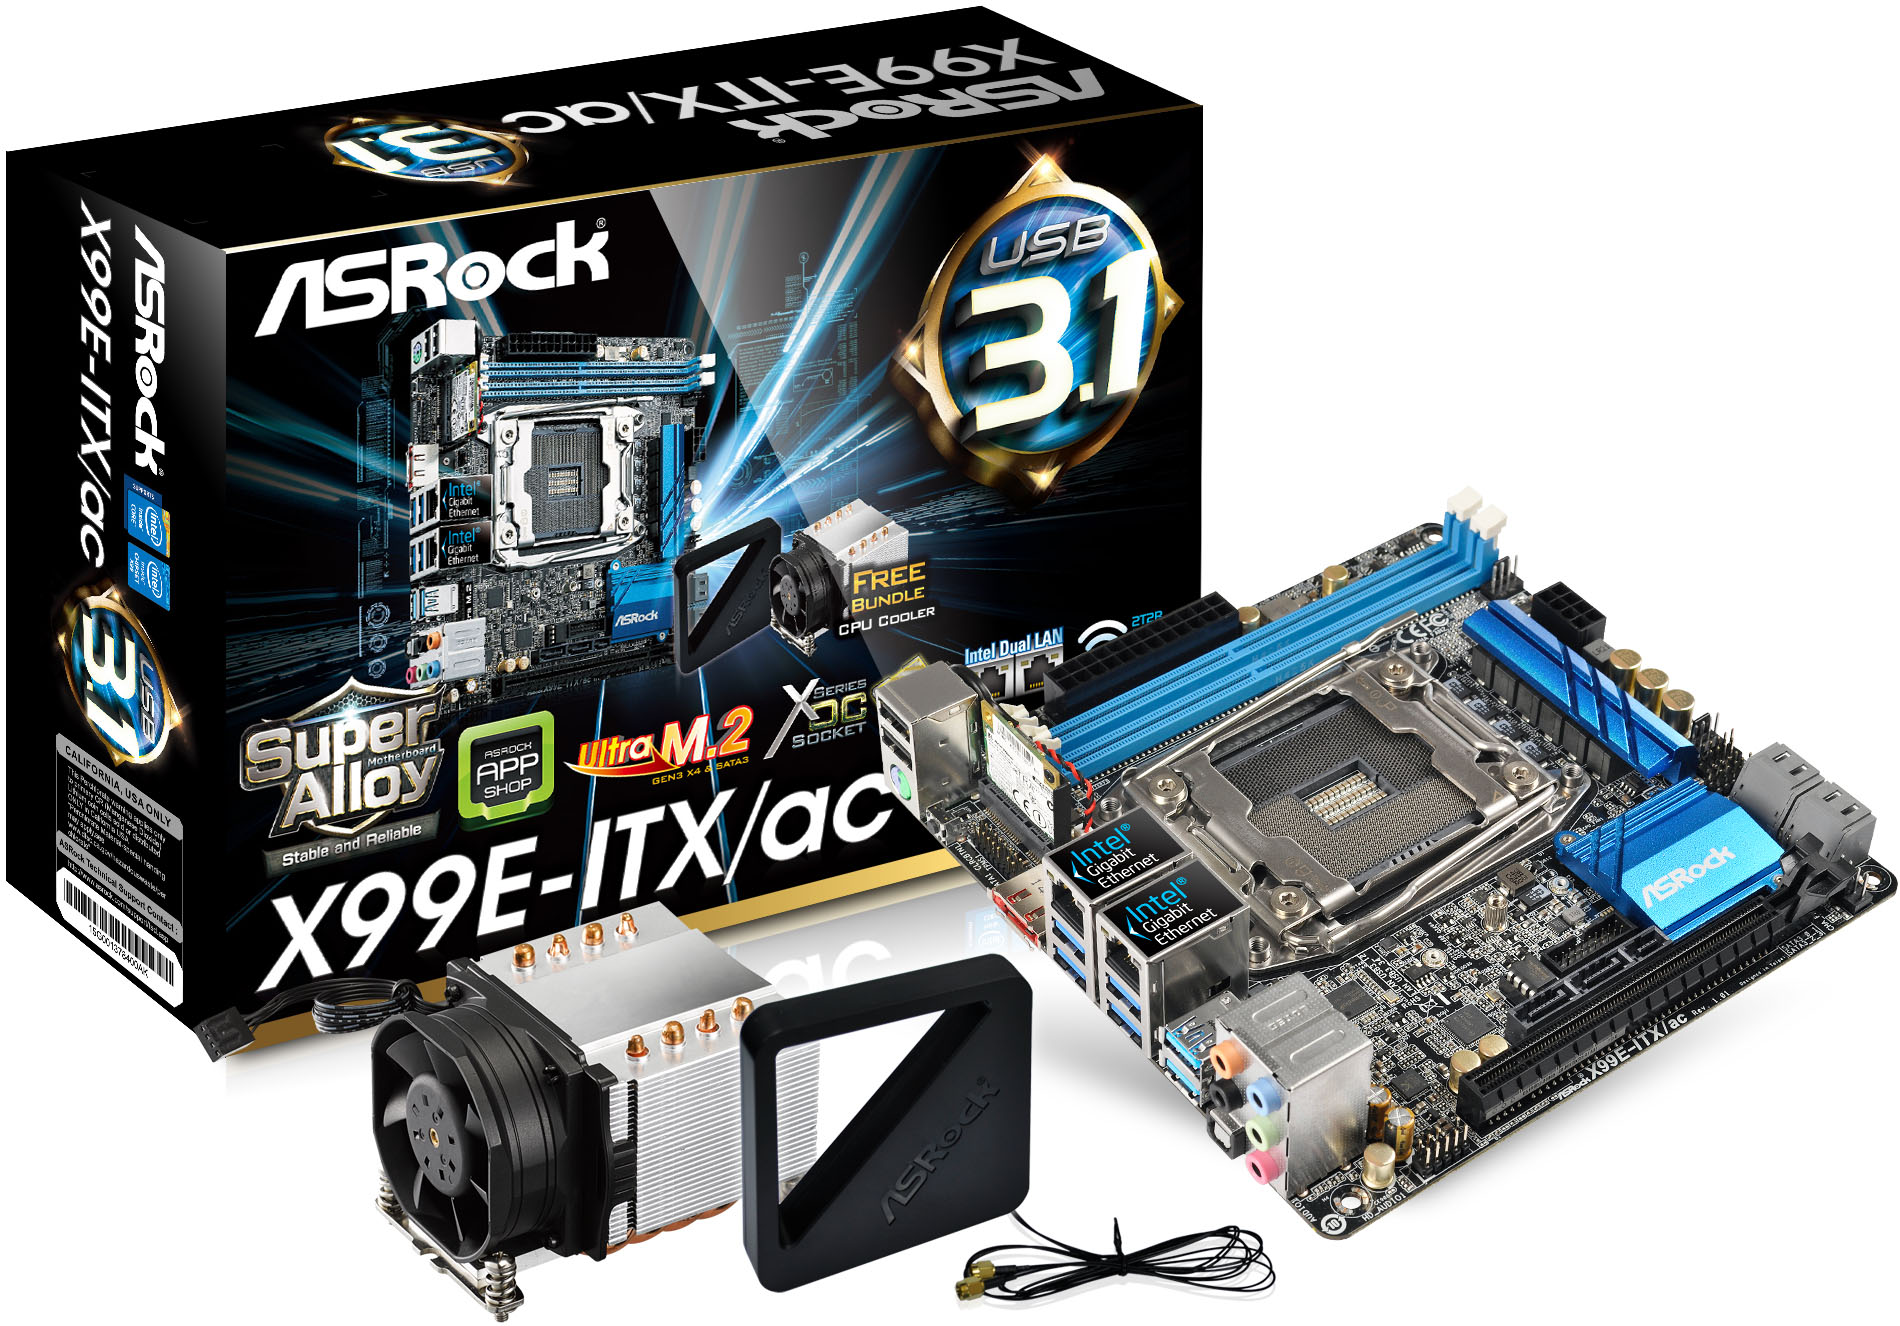 Asrock unveils ultimate mini-ITX: Intel X99, O.C. socket, USB 3.1, 802